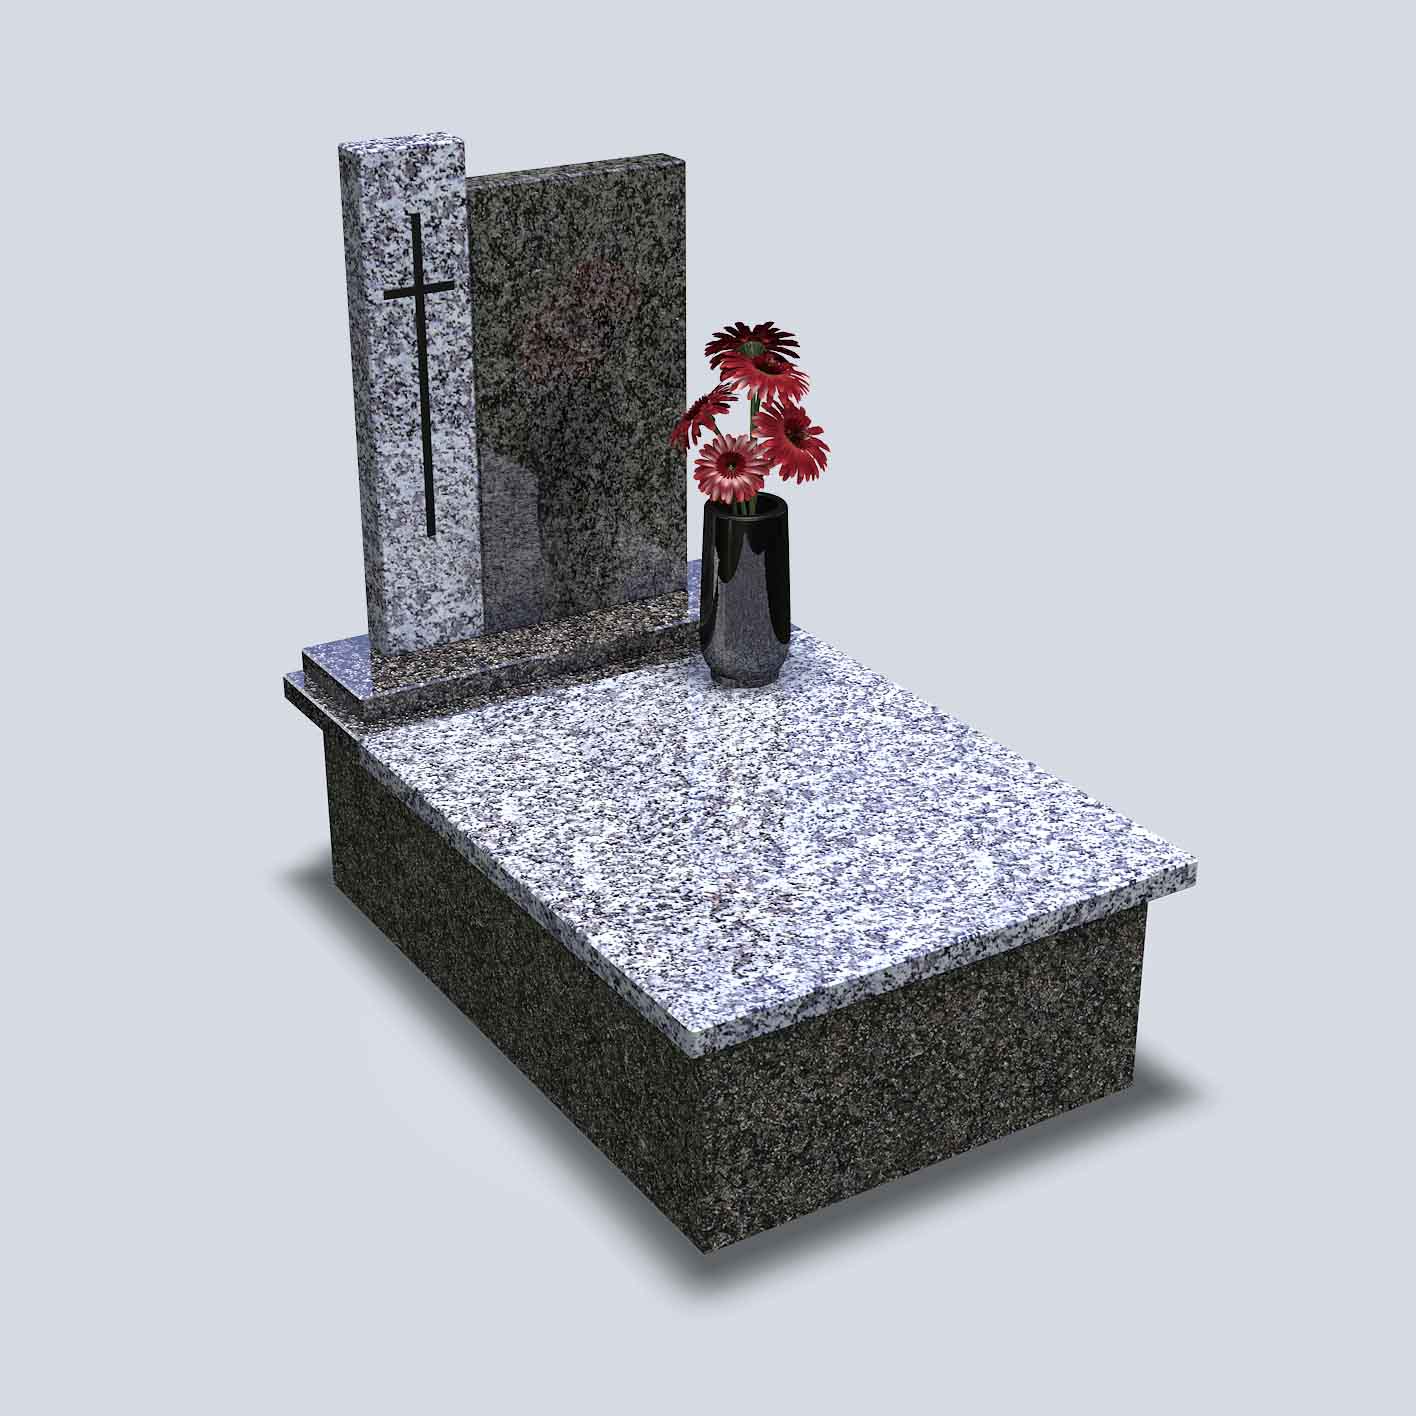 Žulový urnový pomník v tmavobledom vyhotovení s kamennou vázou a kvetmi